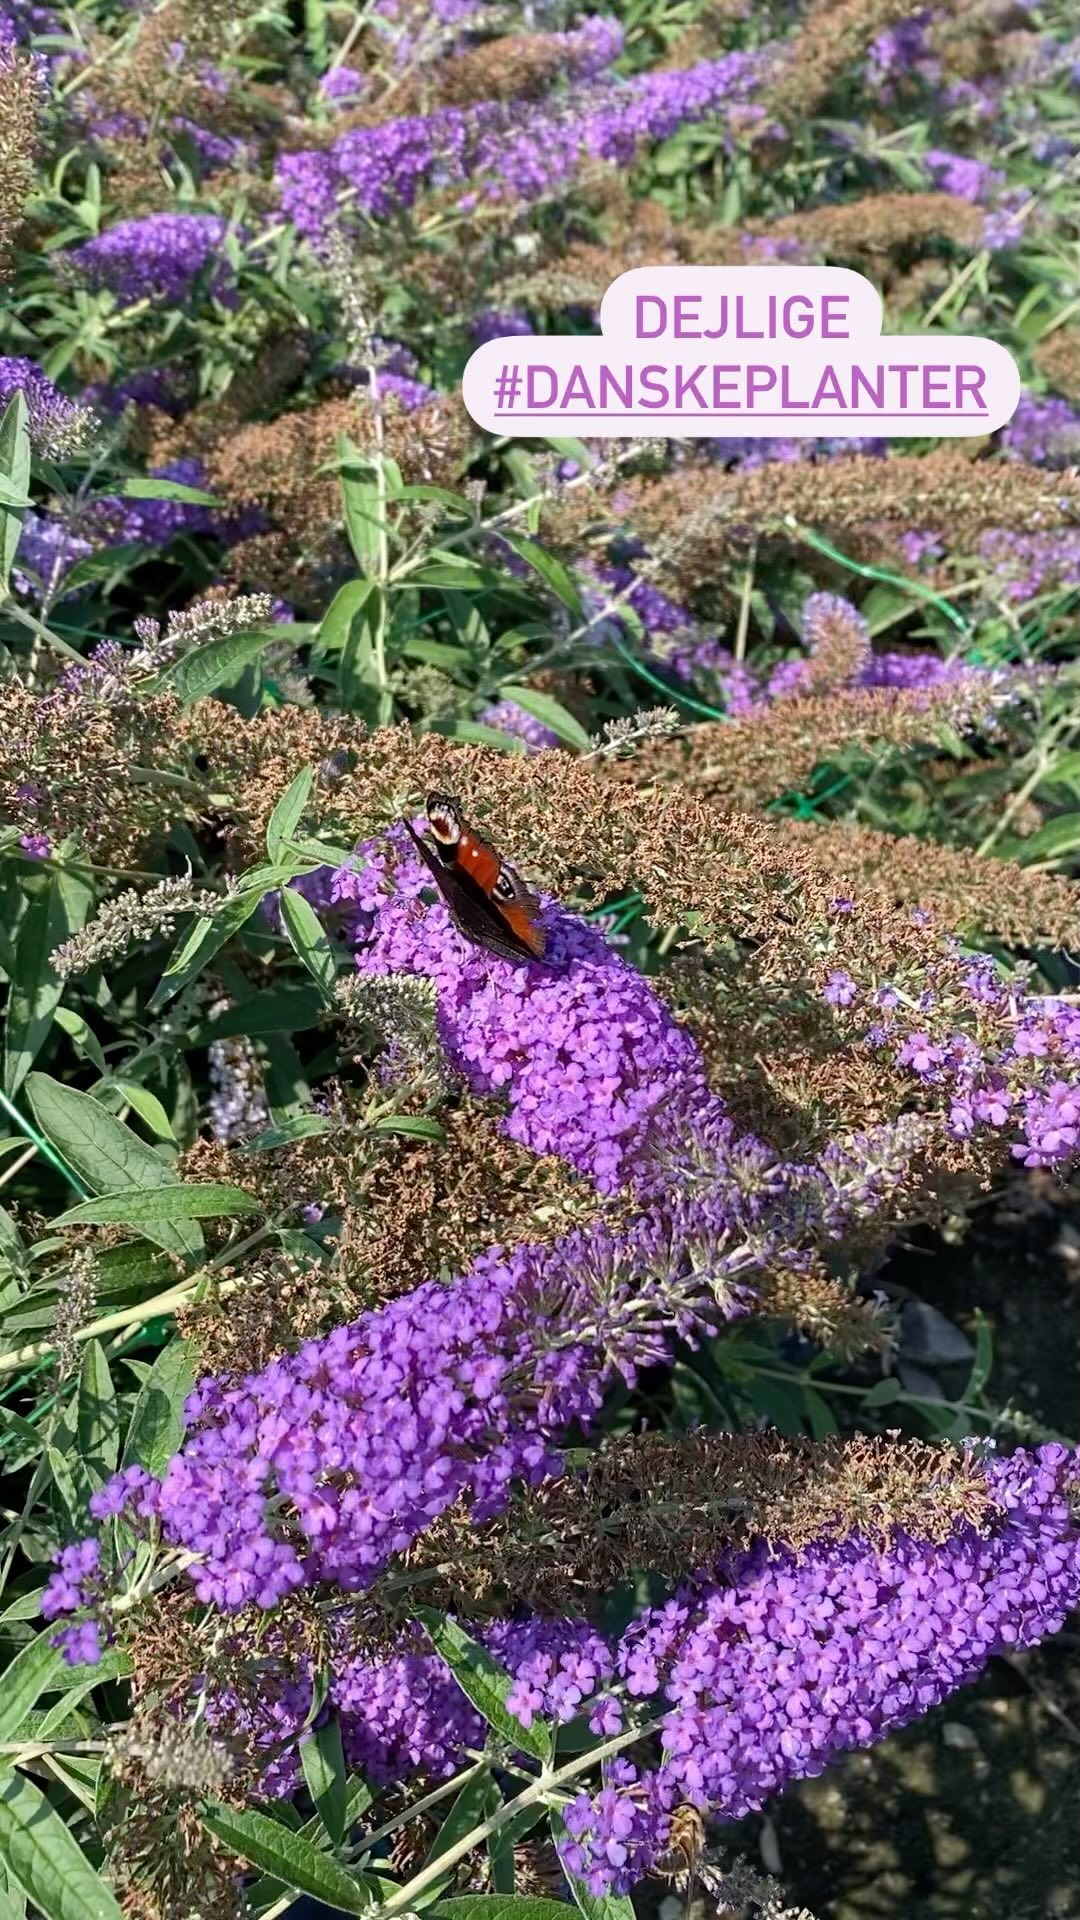 Så skønt med blomster, nektar og insekter på min vej i dag🌸🦋🌺
.
#mitjob #påtur #sommerfuglebusk #buddleja #danskeplanter #biodiversitet #havetid #haveglæde #haveglæder #haveglaeder